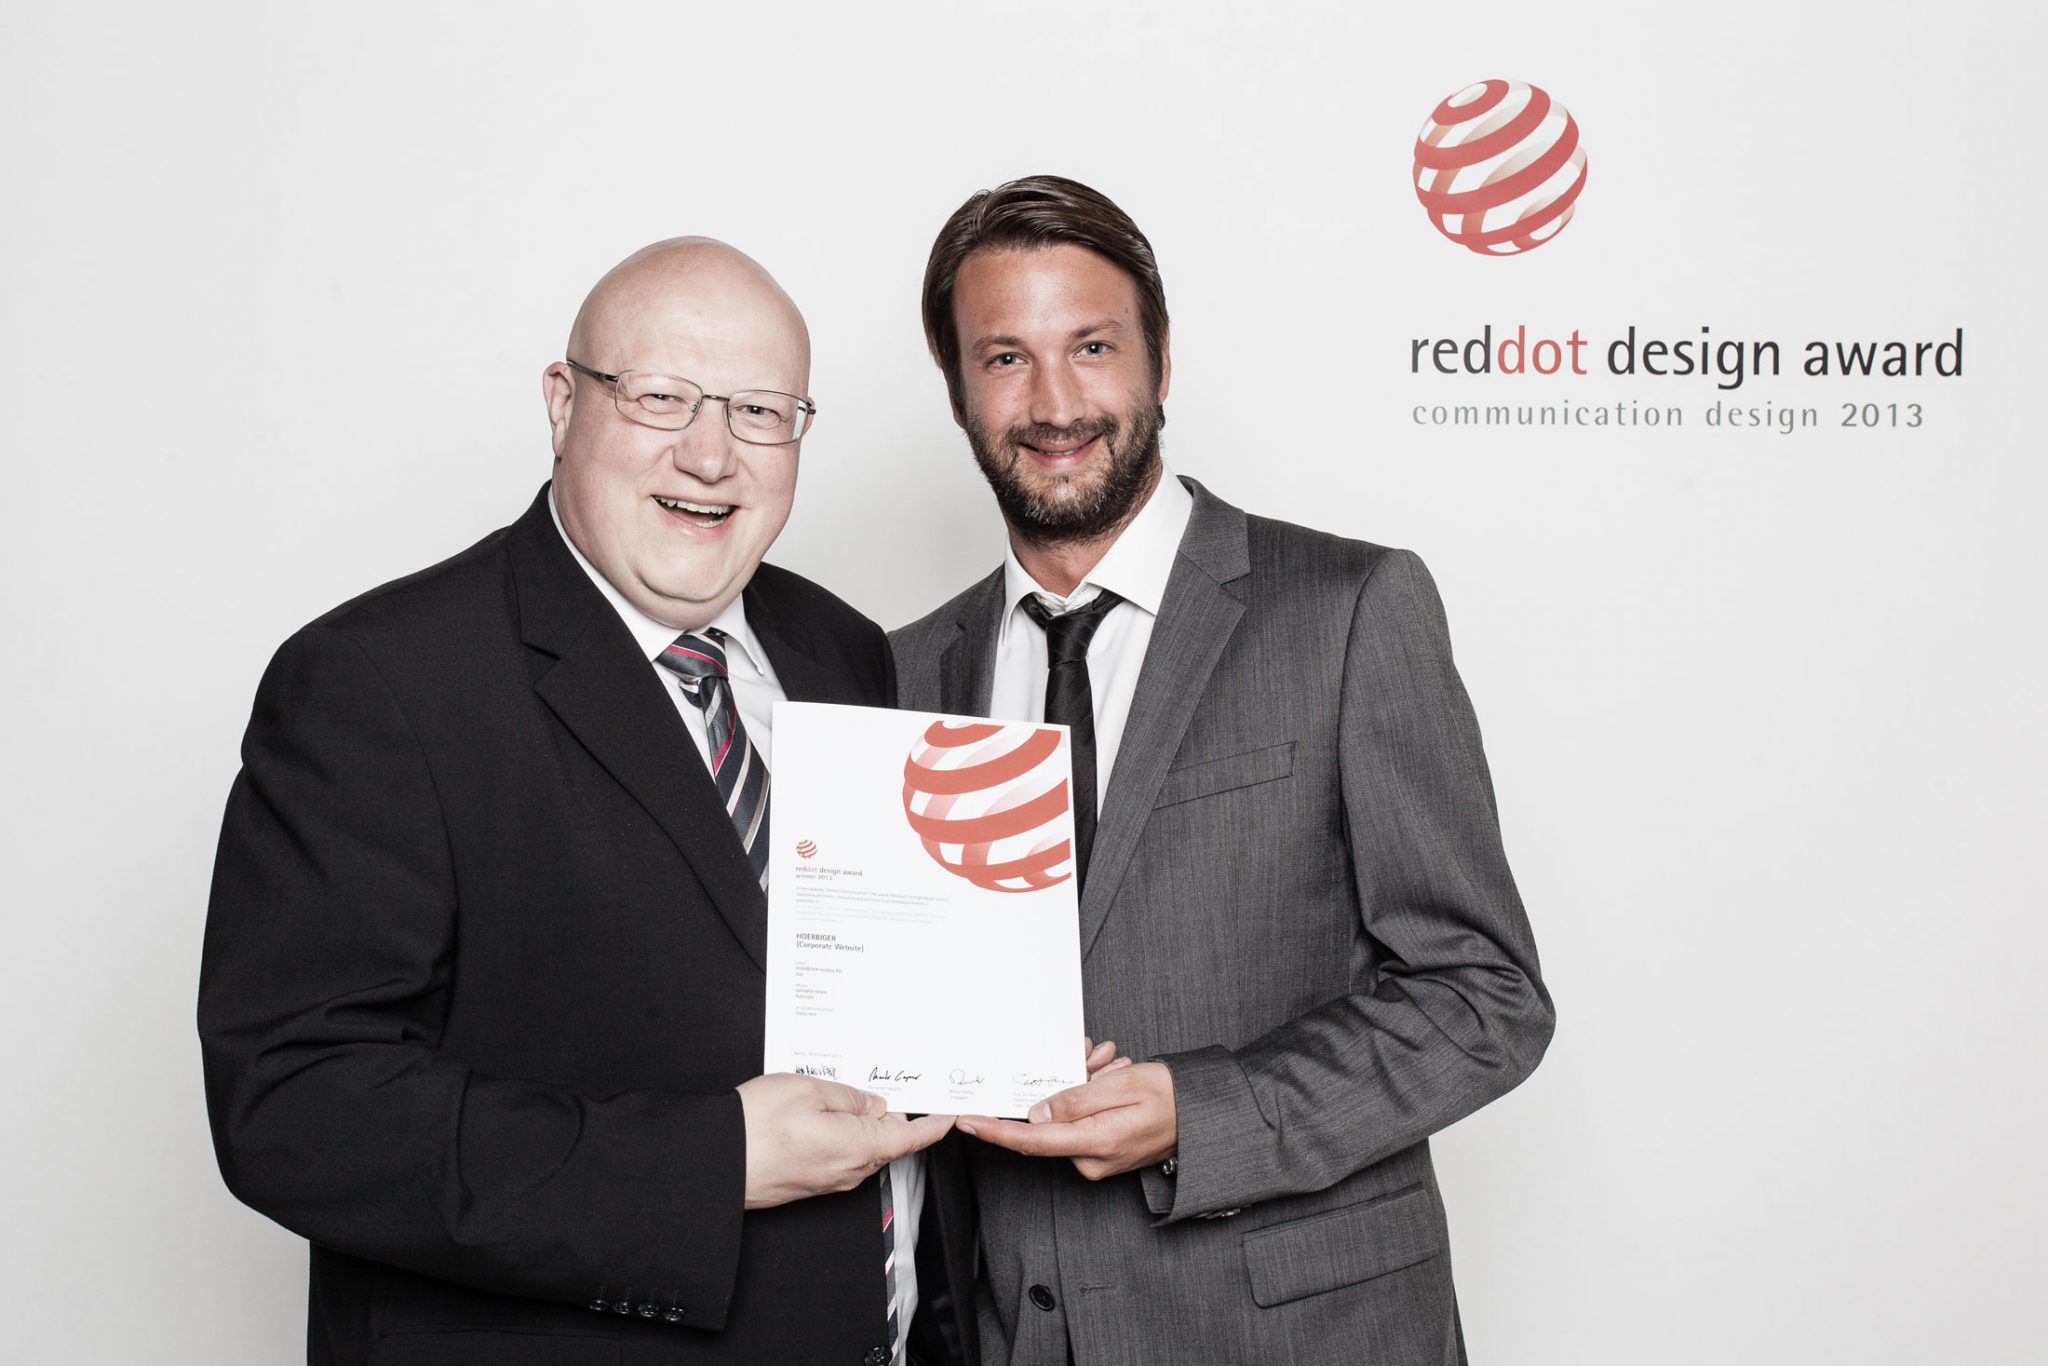 Preisverleihung RedDot Award in Berlin HOERBIGER Holding, GAXWEB Werbeagentur und Internetagentur aus Karlsruhe